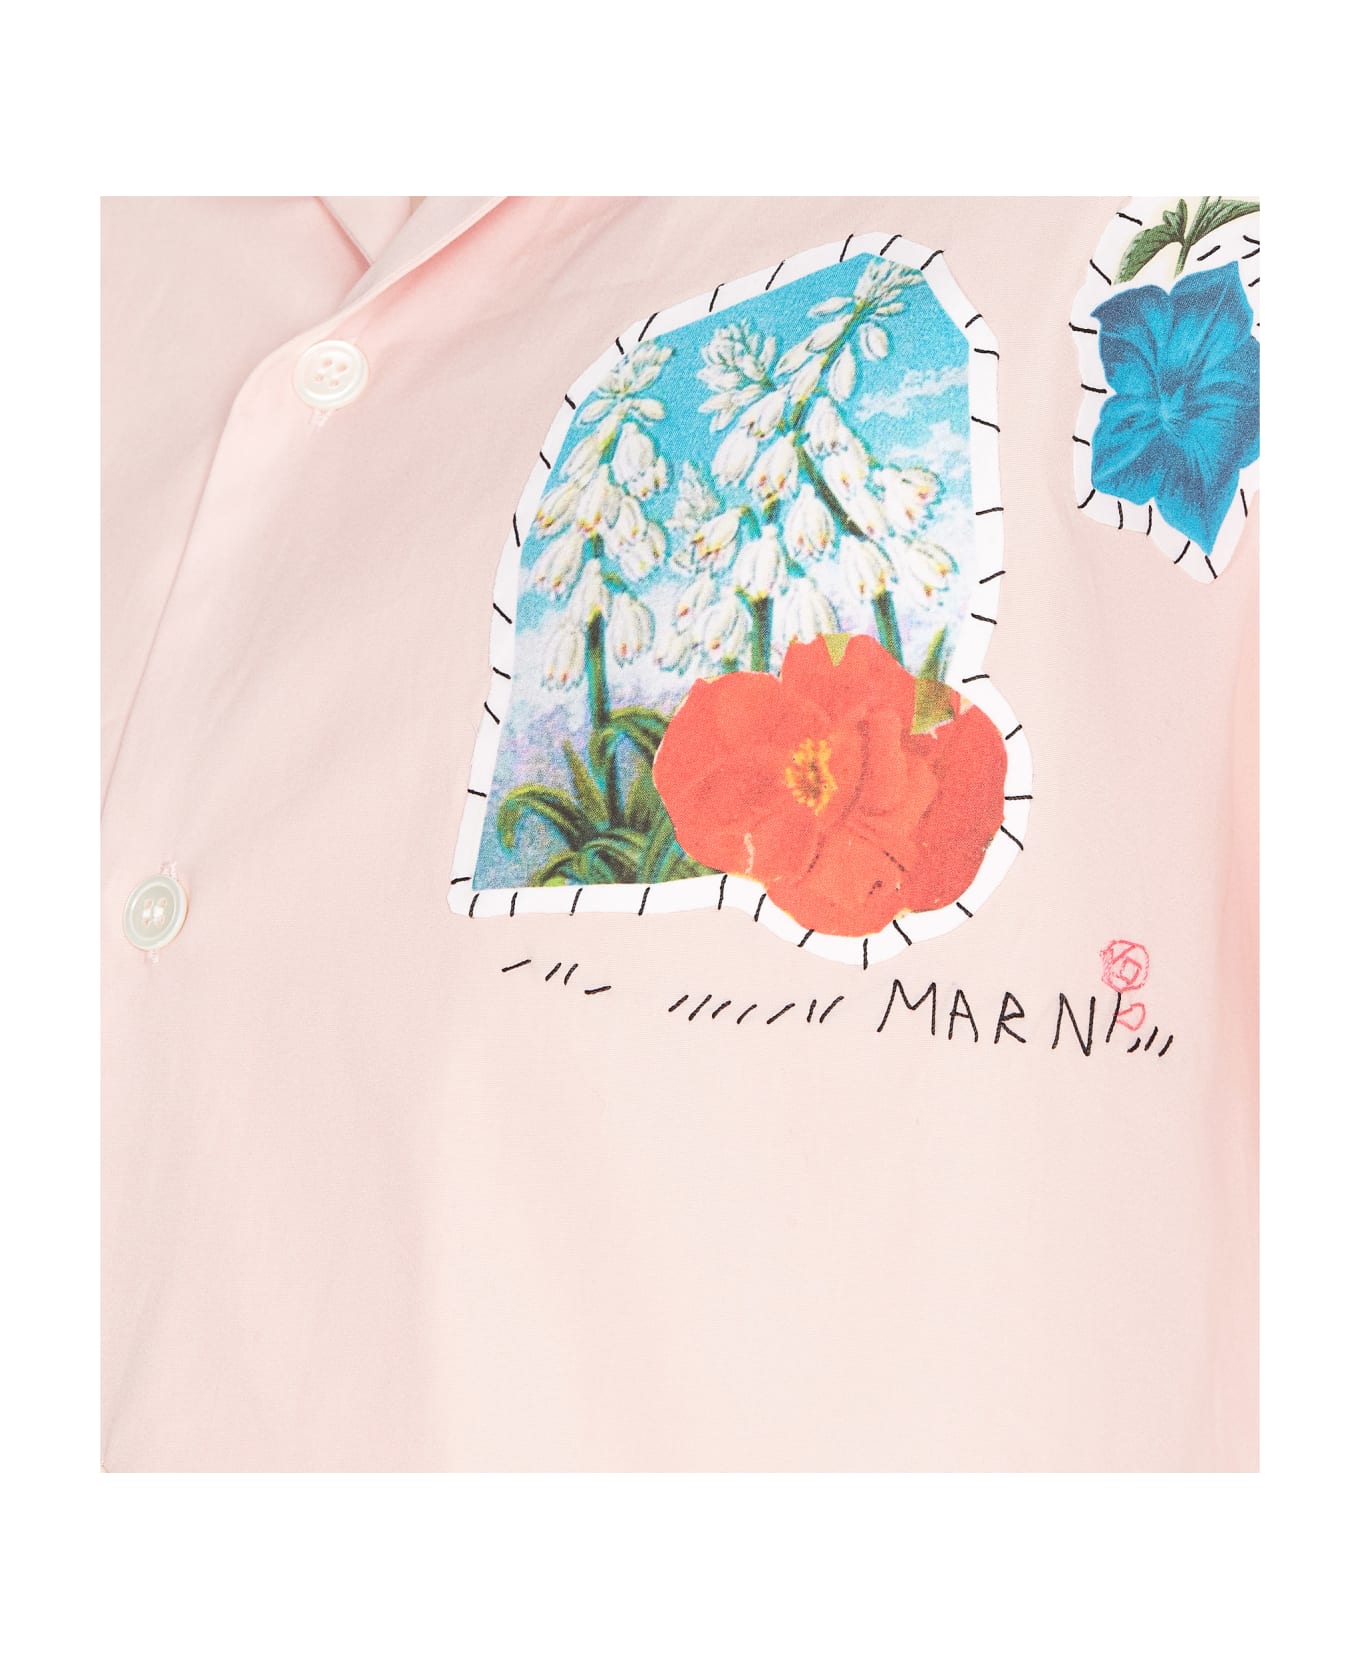 Marni Crop Shirt - Pink シャツ